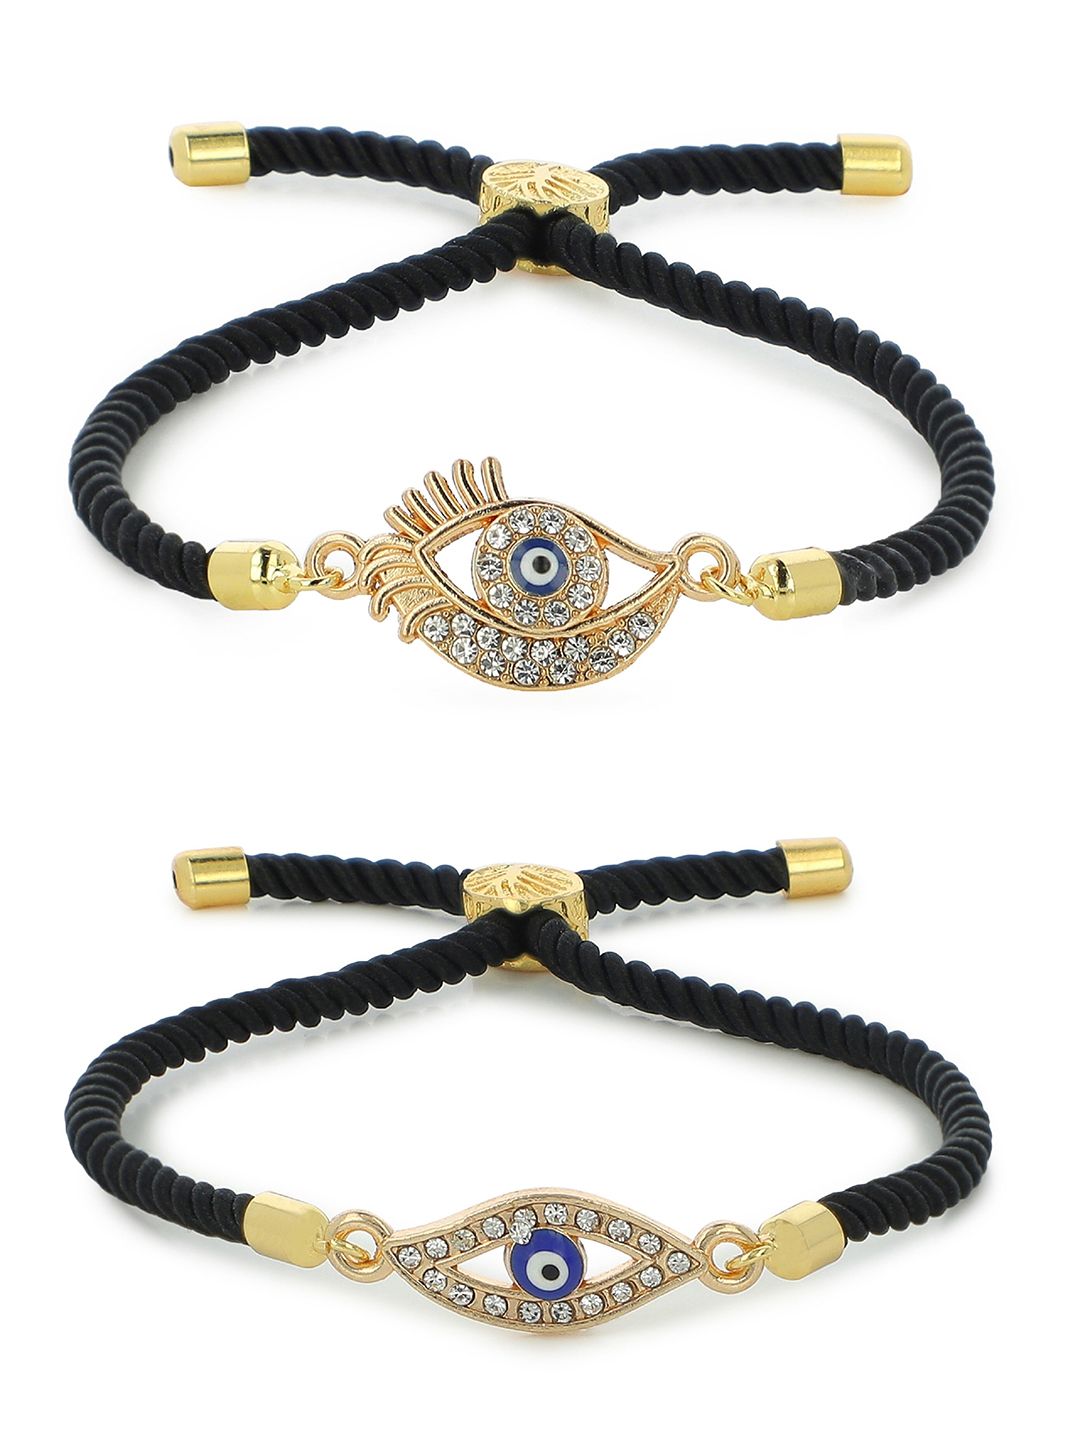 EL REGALO Unisex Pack of 2 Black & Gold-Toned Wraparound Bracelet Price in India